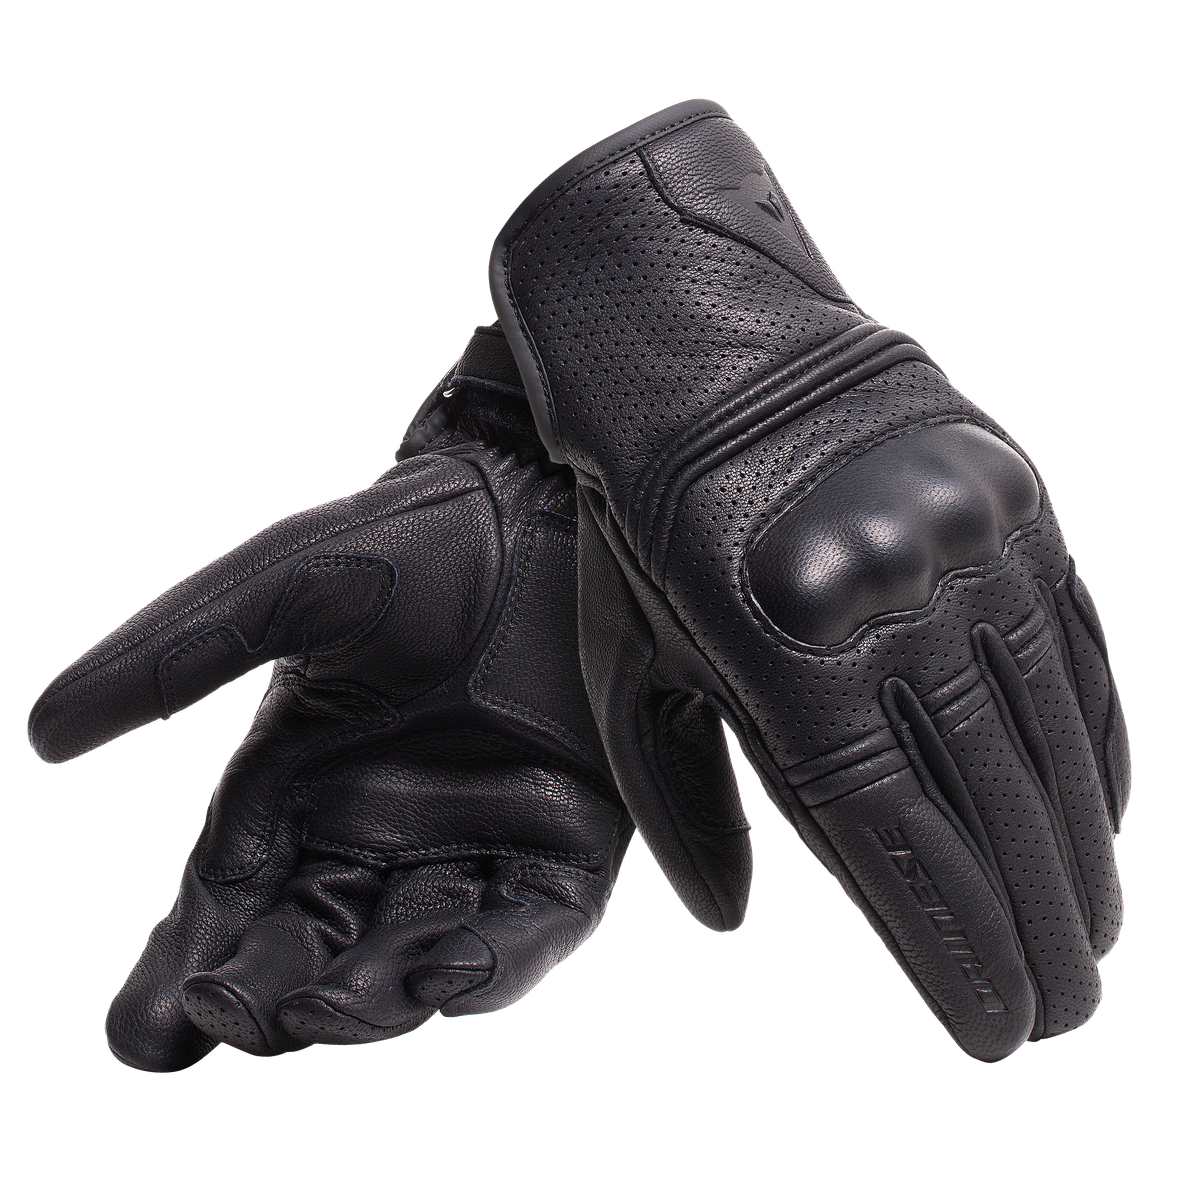 Перчатки gloves купить. Мотоперчатки Dainese мужские. Мотоперчатки Dainese Air. Мотоперчатки Dainese Gloves. Кожаные мотоперчатки Dainese.